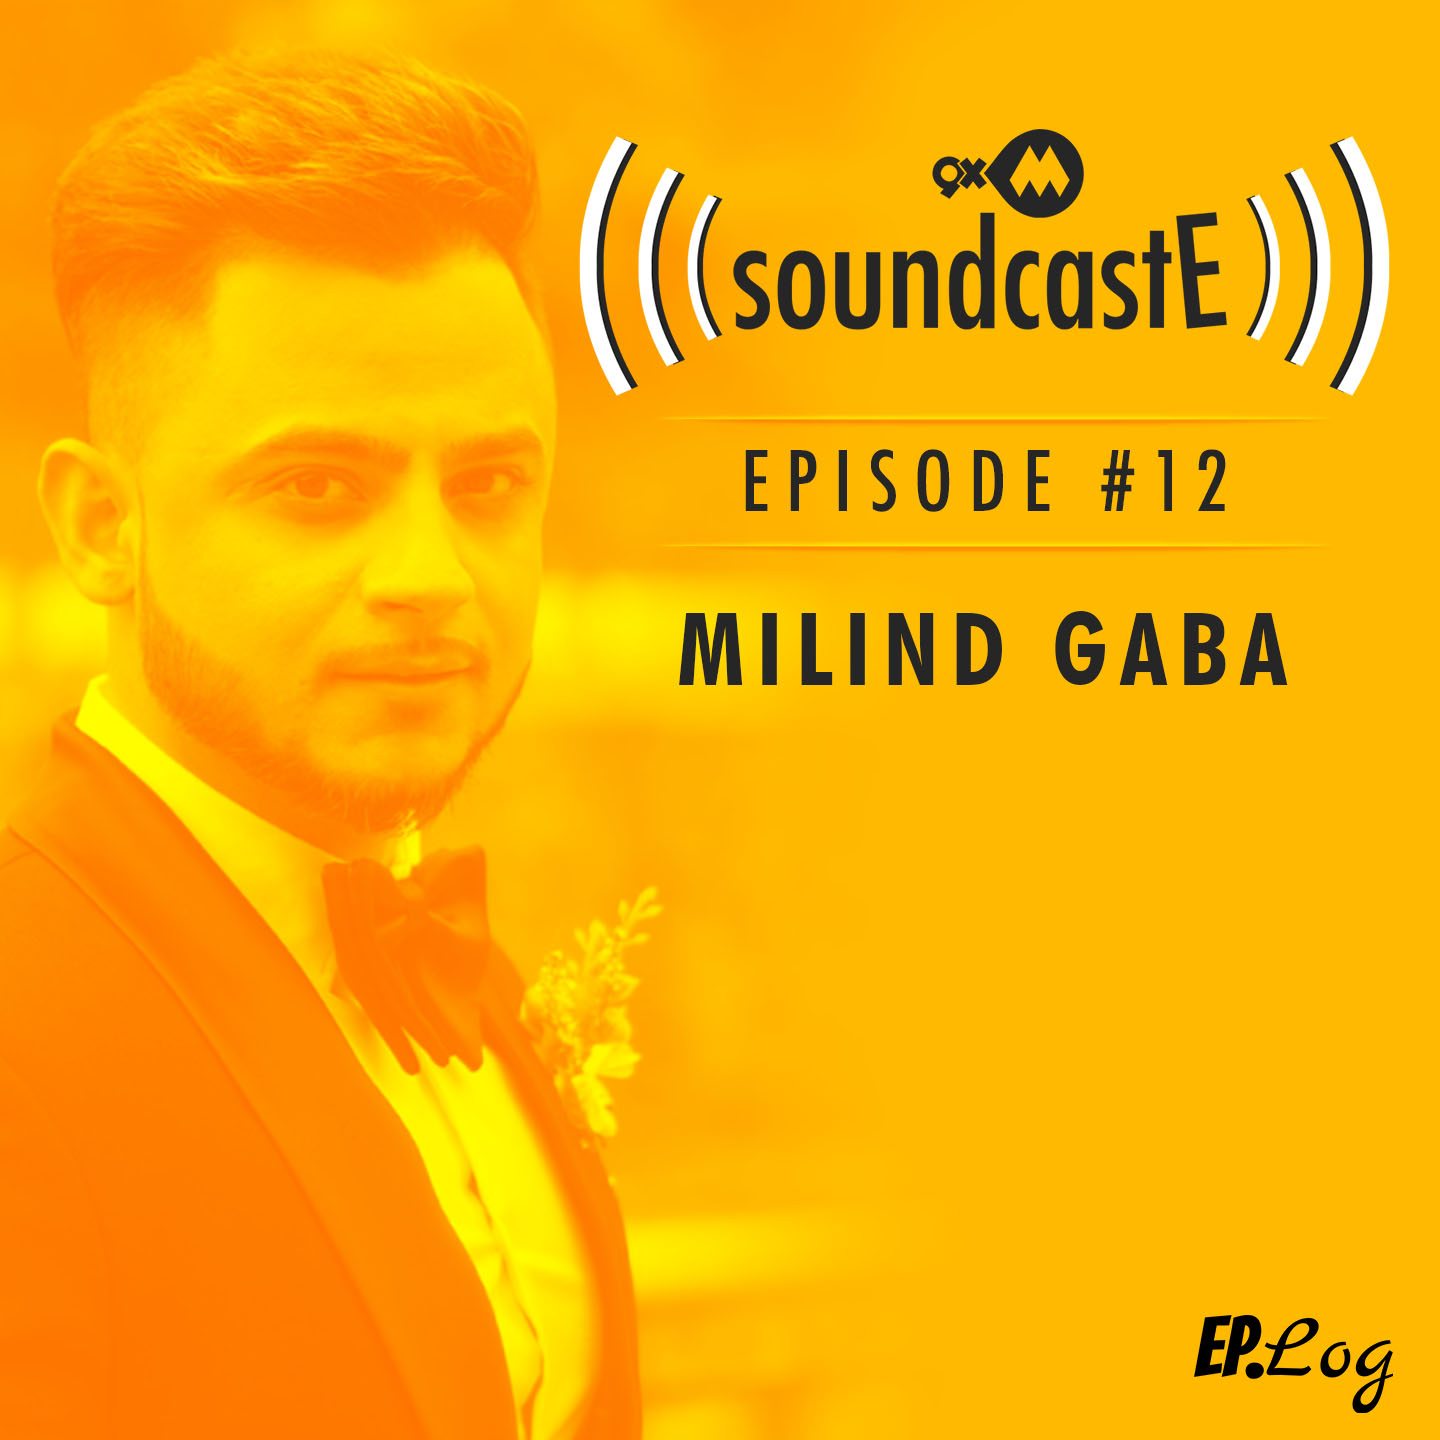 Ep. 12: 9XM SoundcastE Milind Gaba